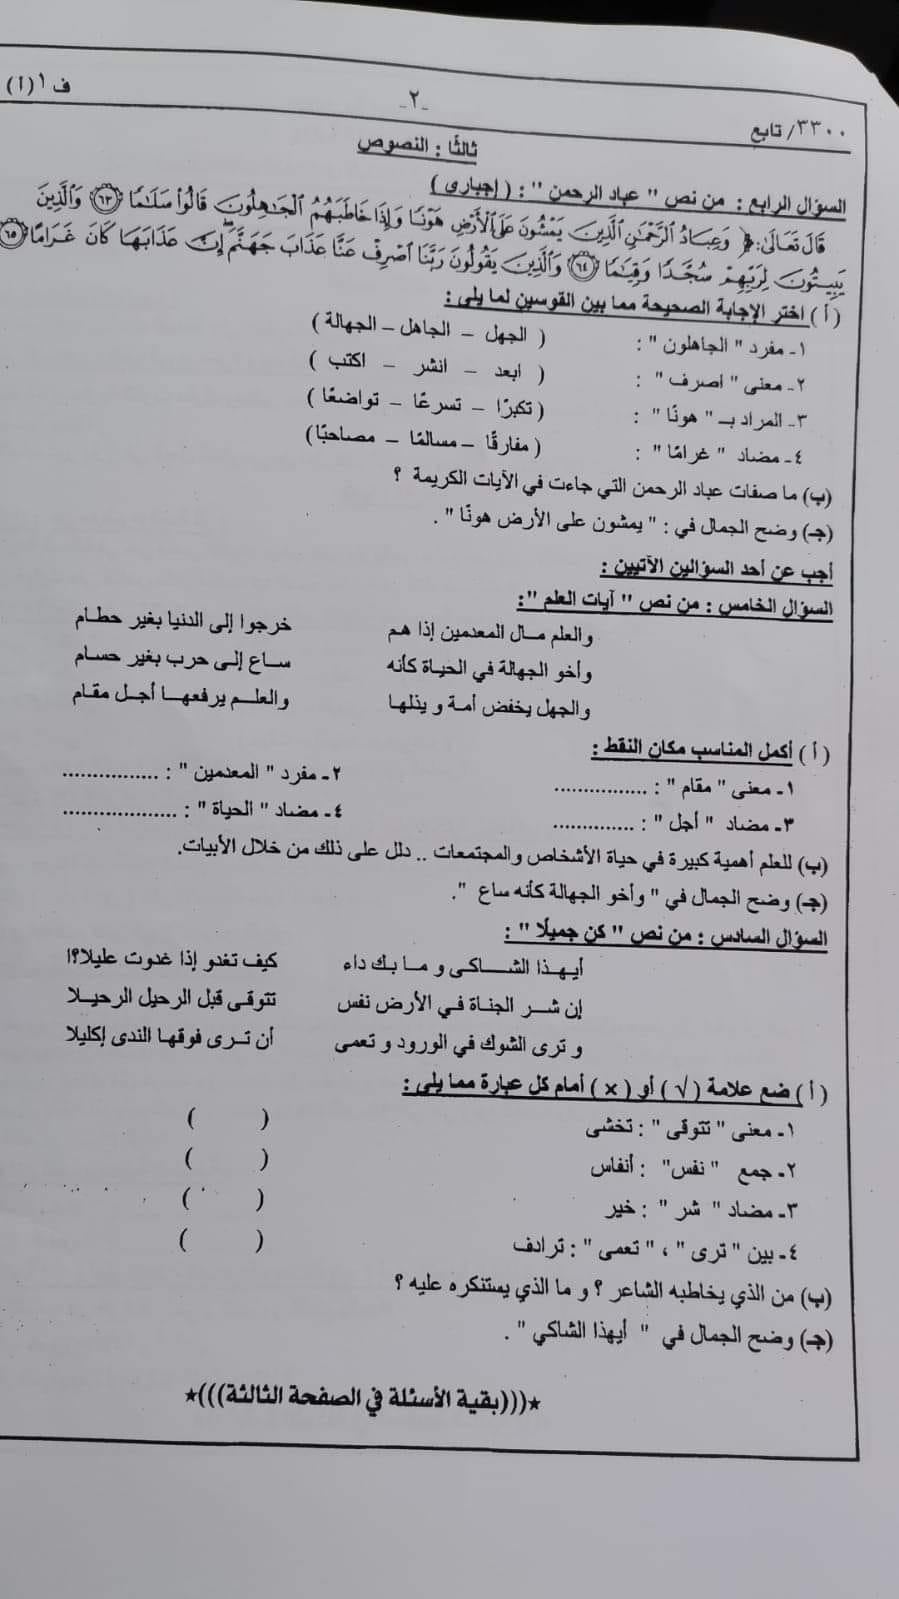 امتحان اللغة العربية للصف الثالث الاعدادي ترم أول 2022 أبناؤنا في الخارج 259